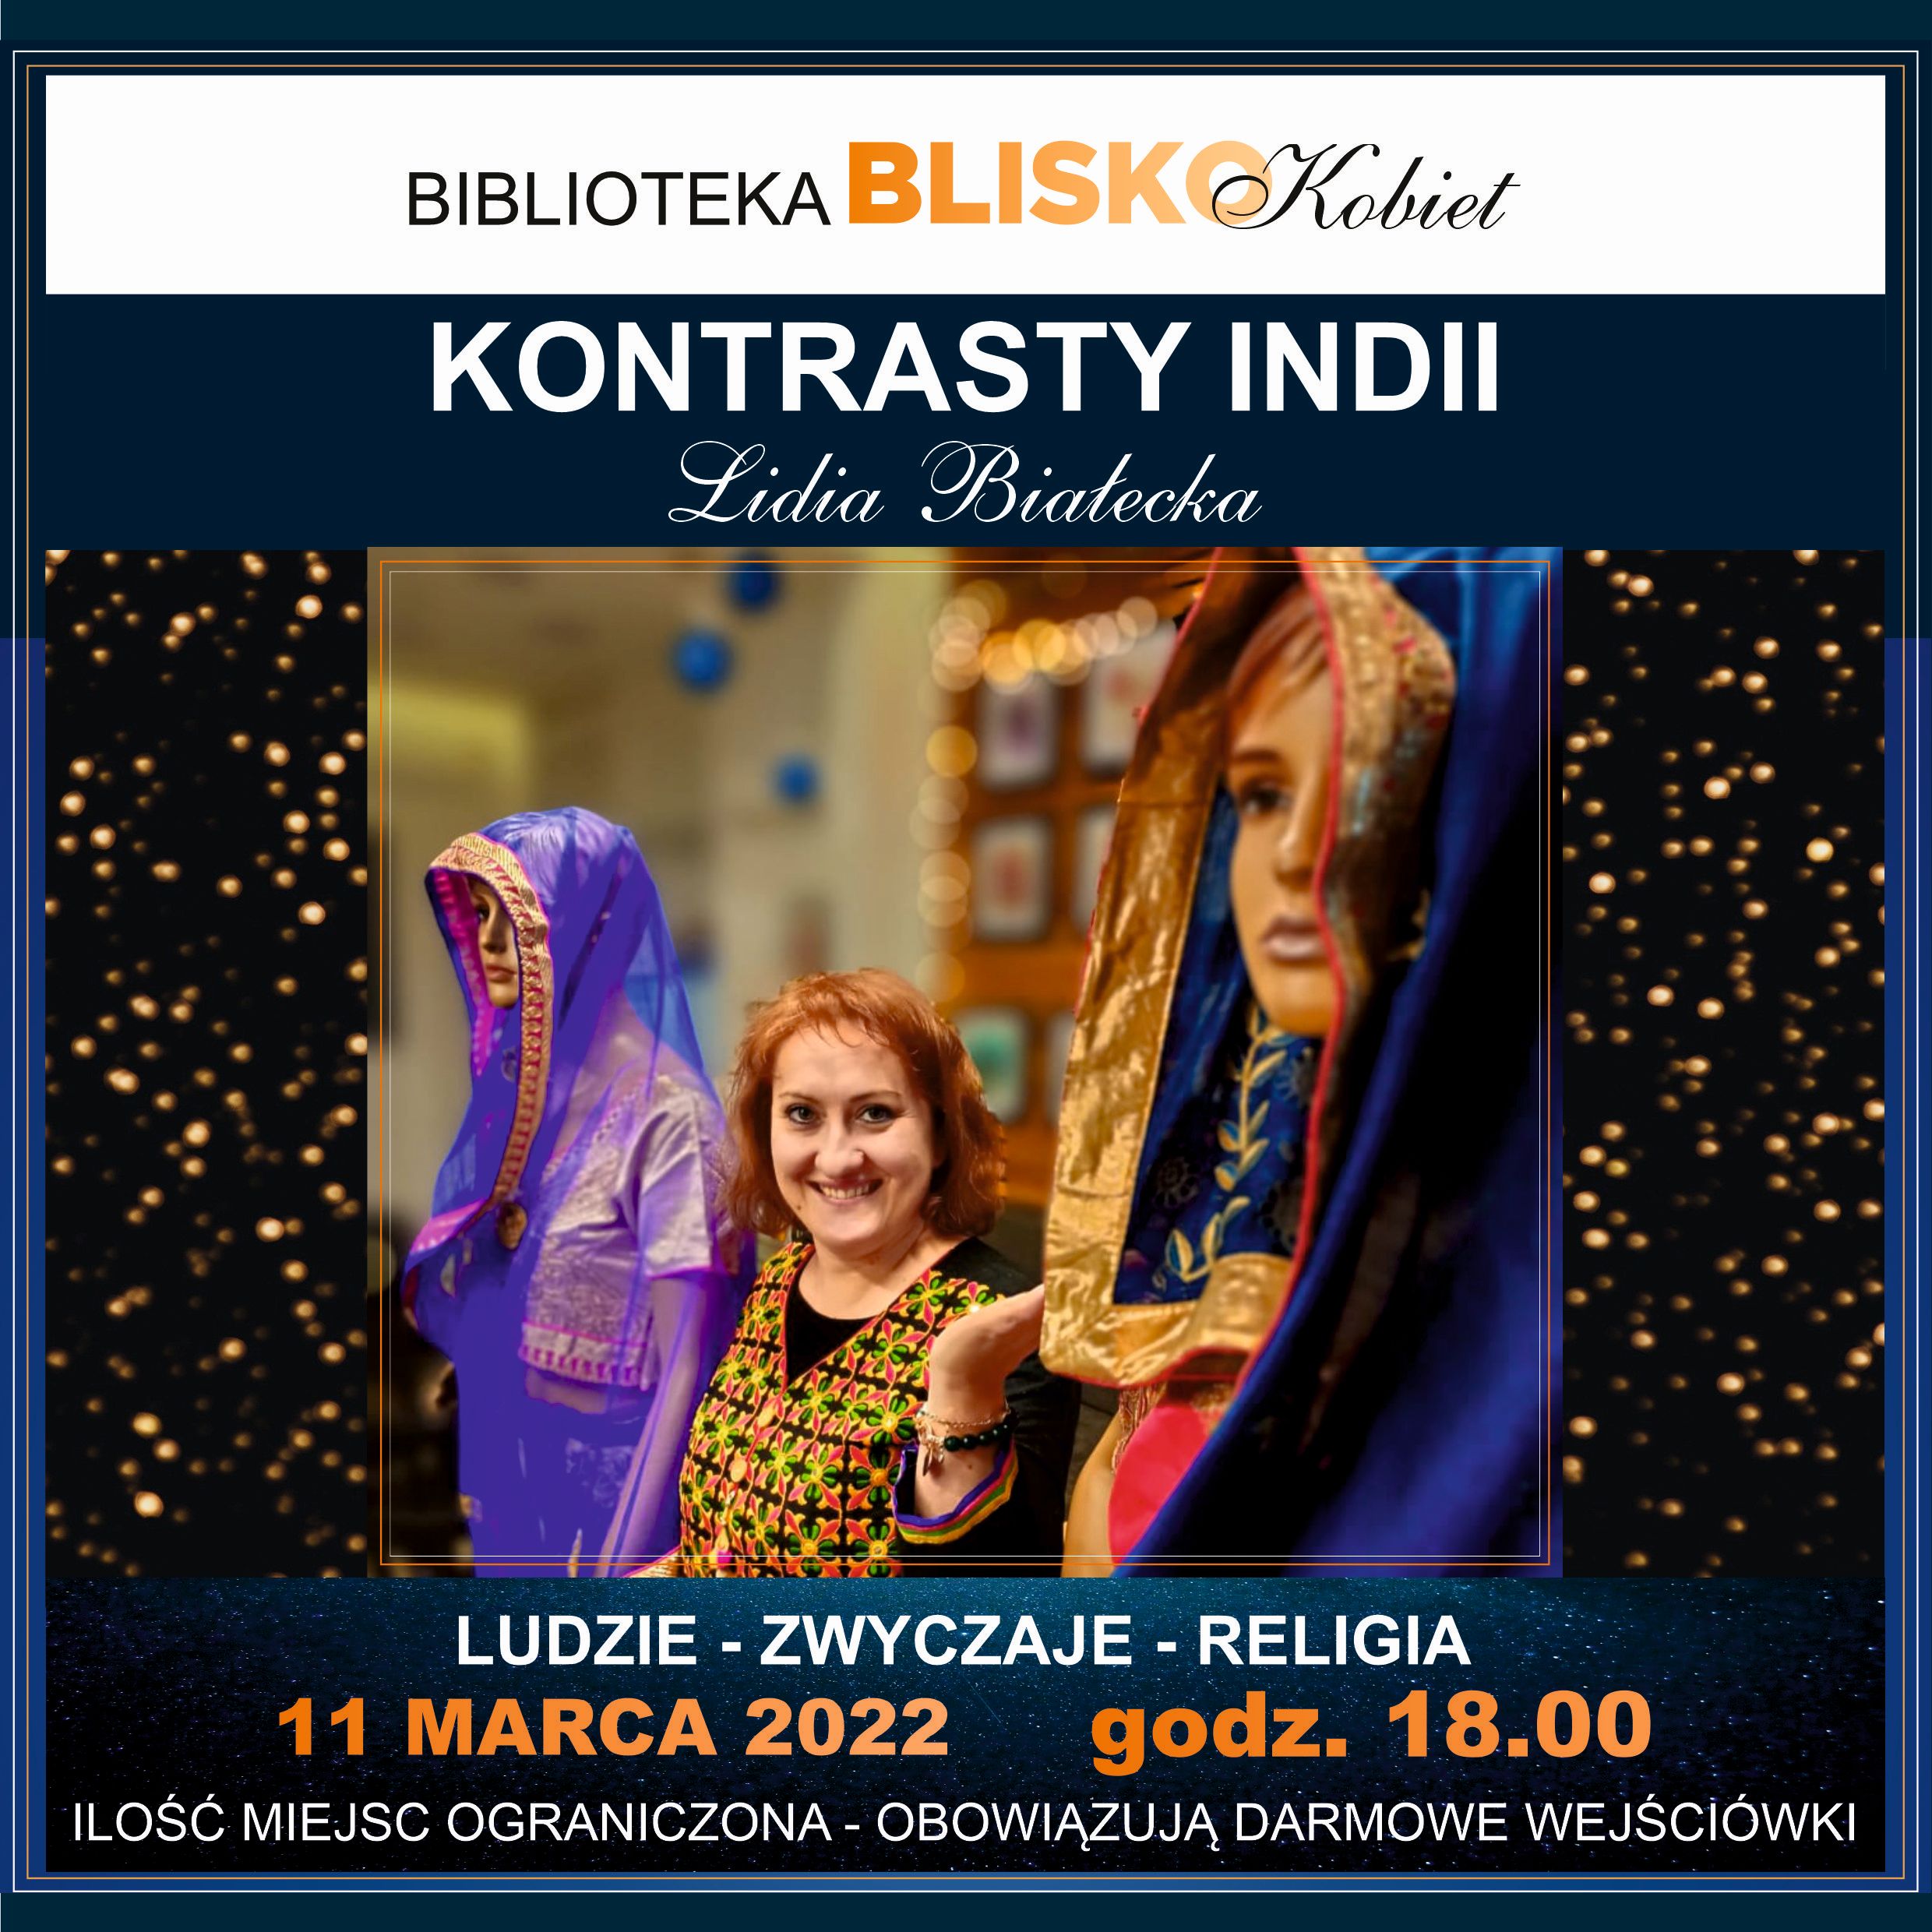 Kontrasty Indii, Lidia Białecka - 11 Marca 2022, Godz. 18.00 - Projekt: Biblioteka BLISKO Ciebie